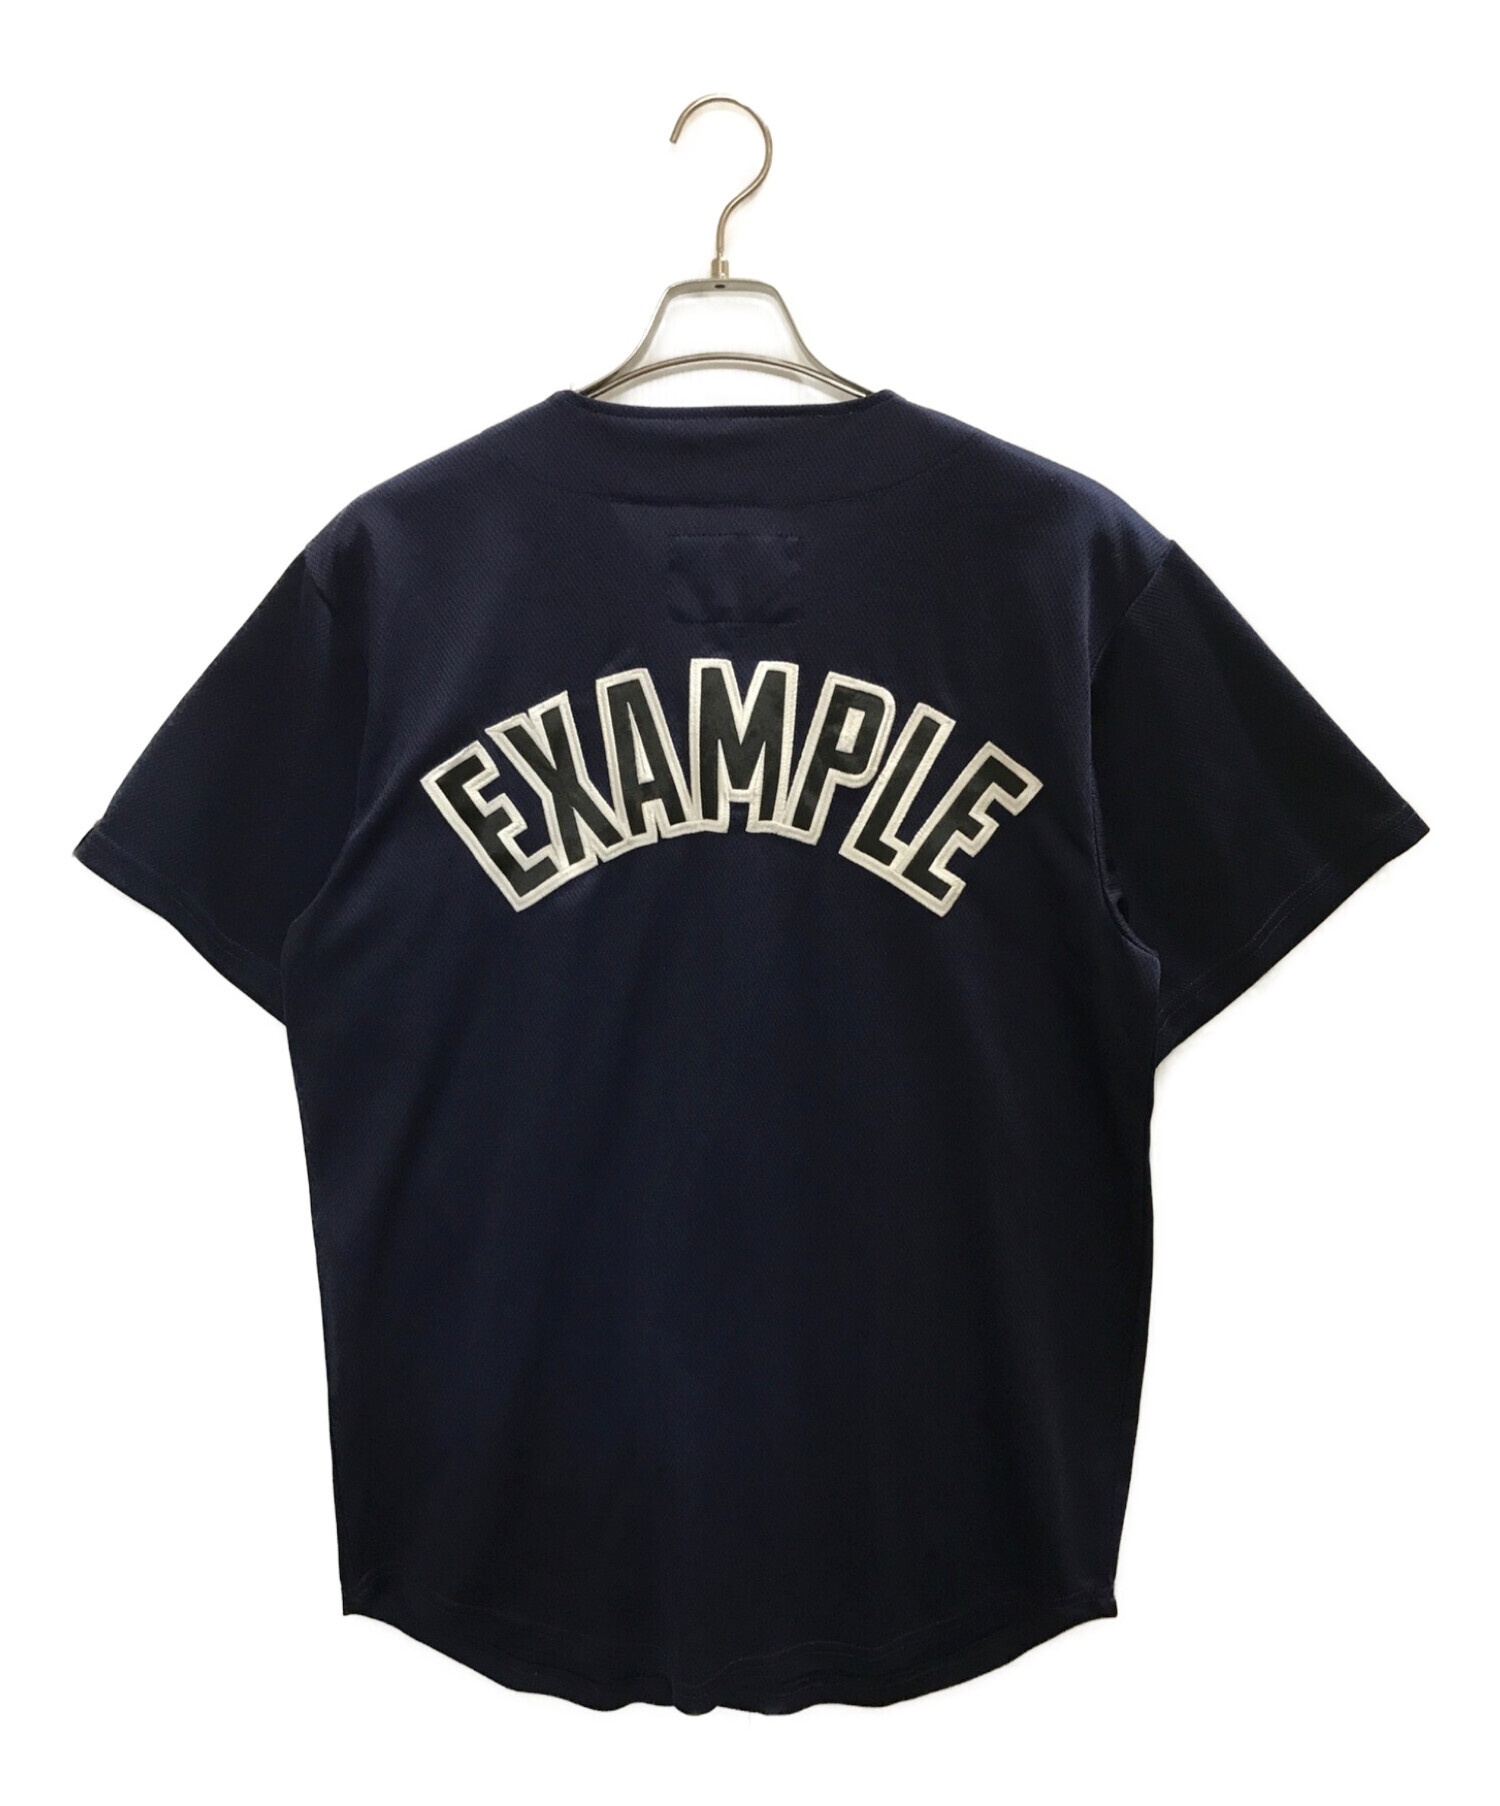 EXAMPLE (エグザンプル) ベースボールシャツ ネイビー サイズ:L